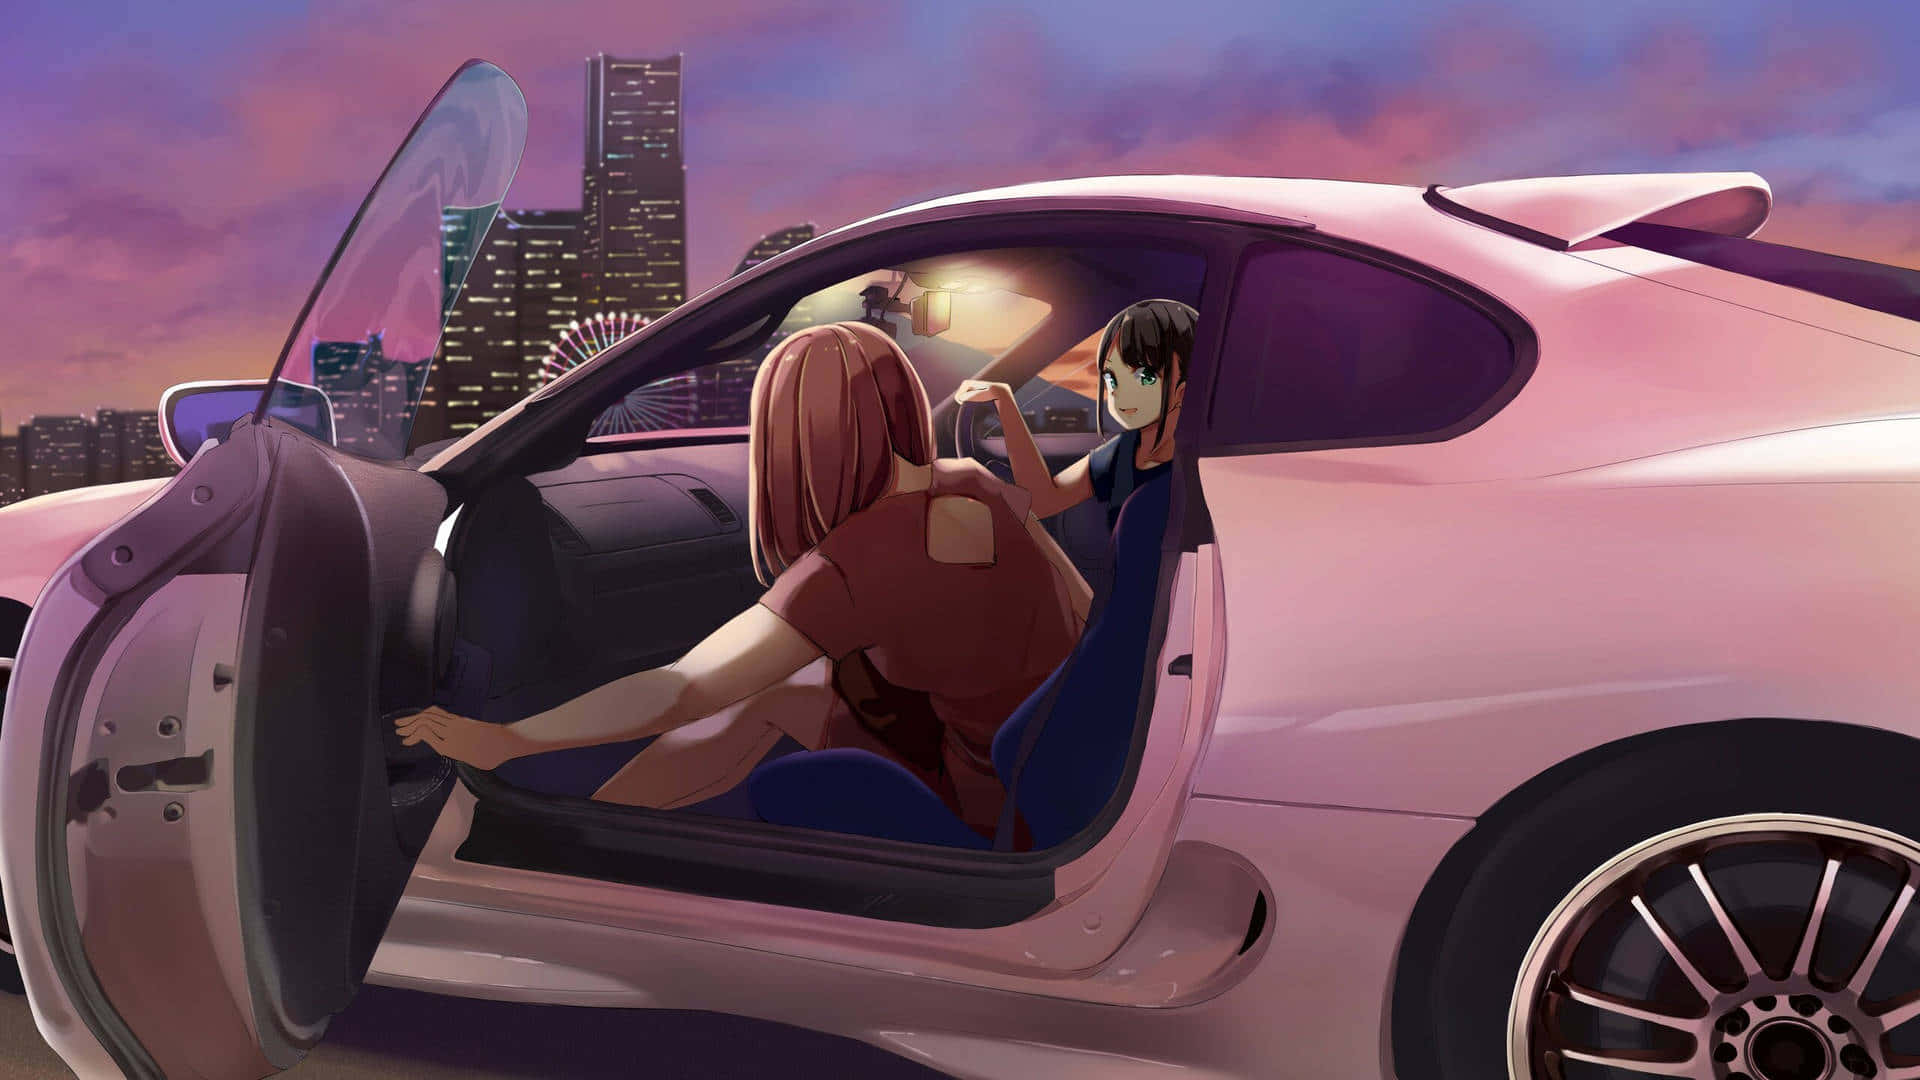 "Speeding through life, in a dreamlike manner: Anime Drift" Wallpaper